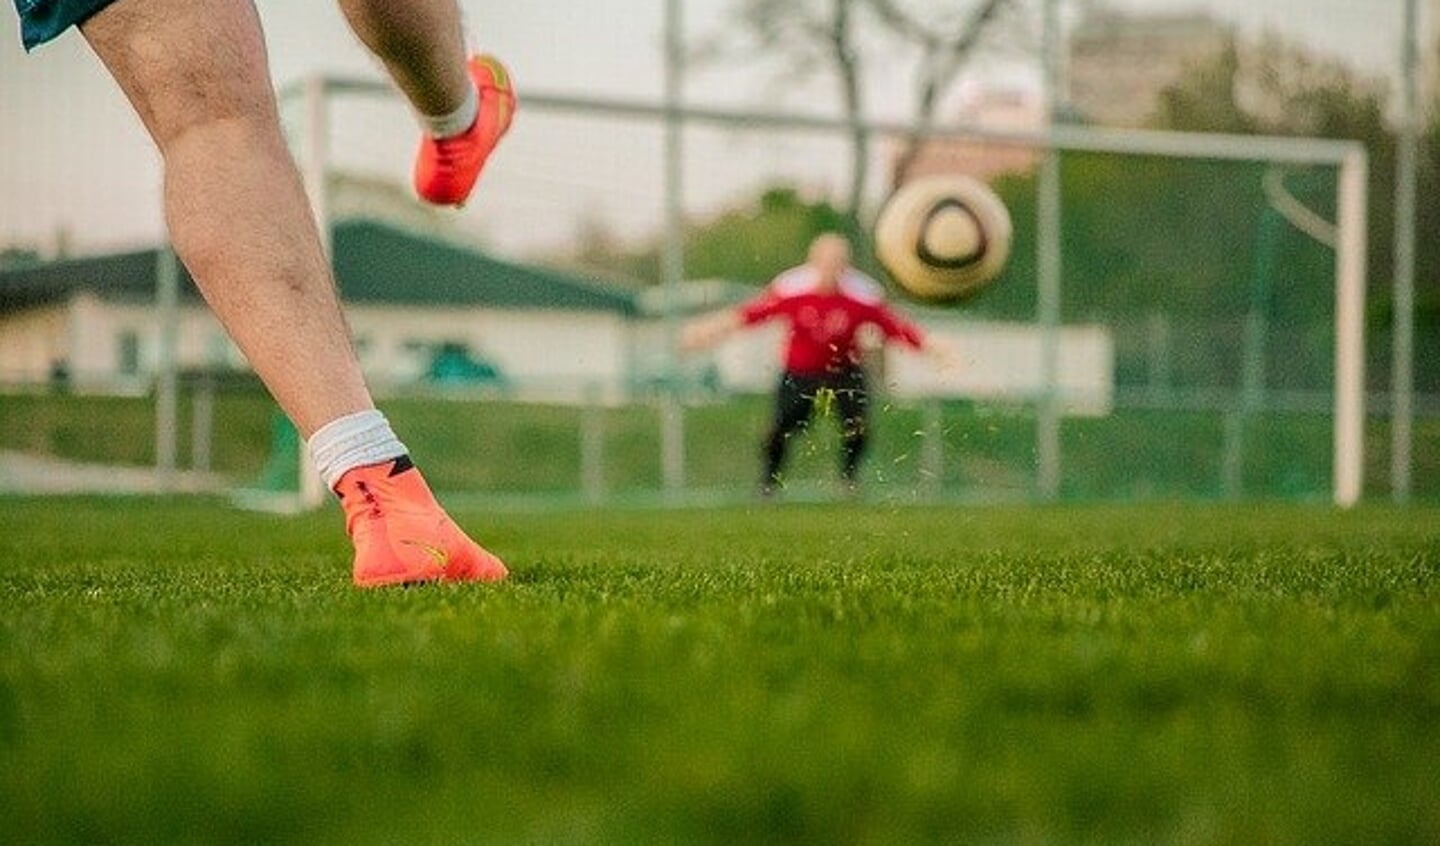 Voetbal: schot op doel. Foto: Pixabay